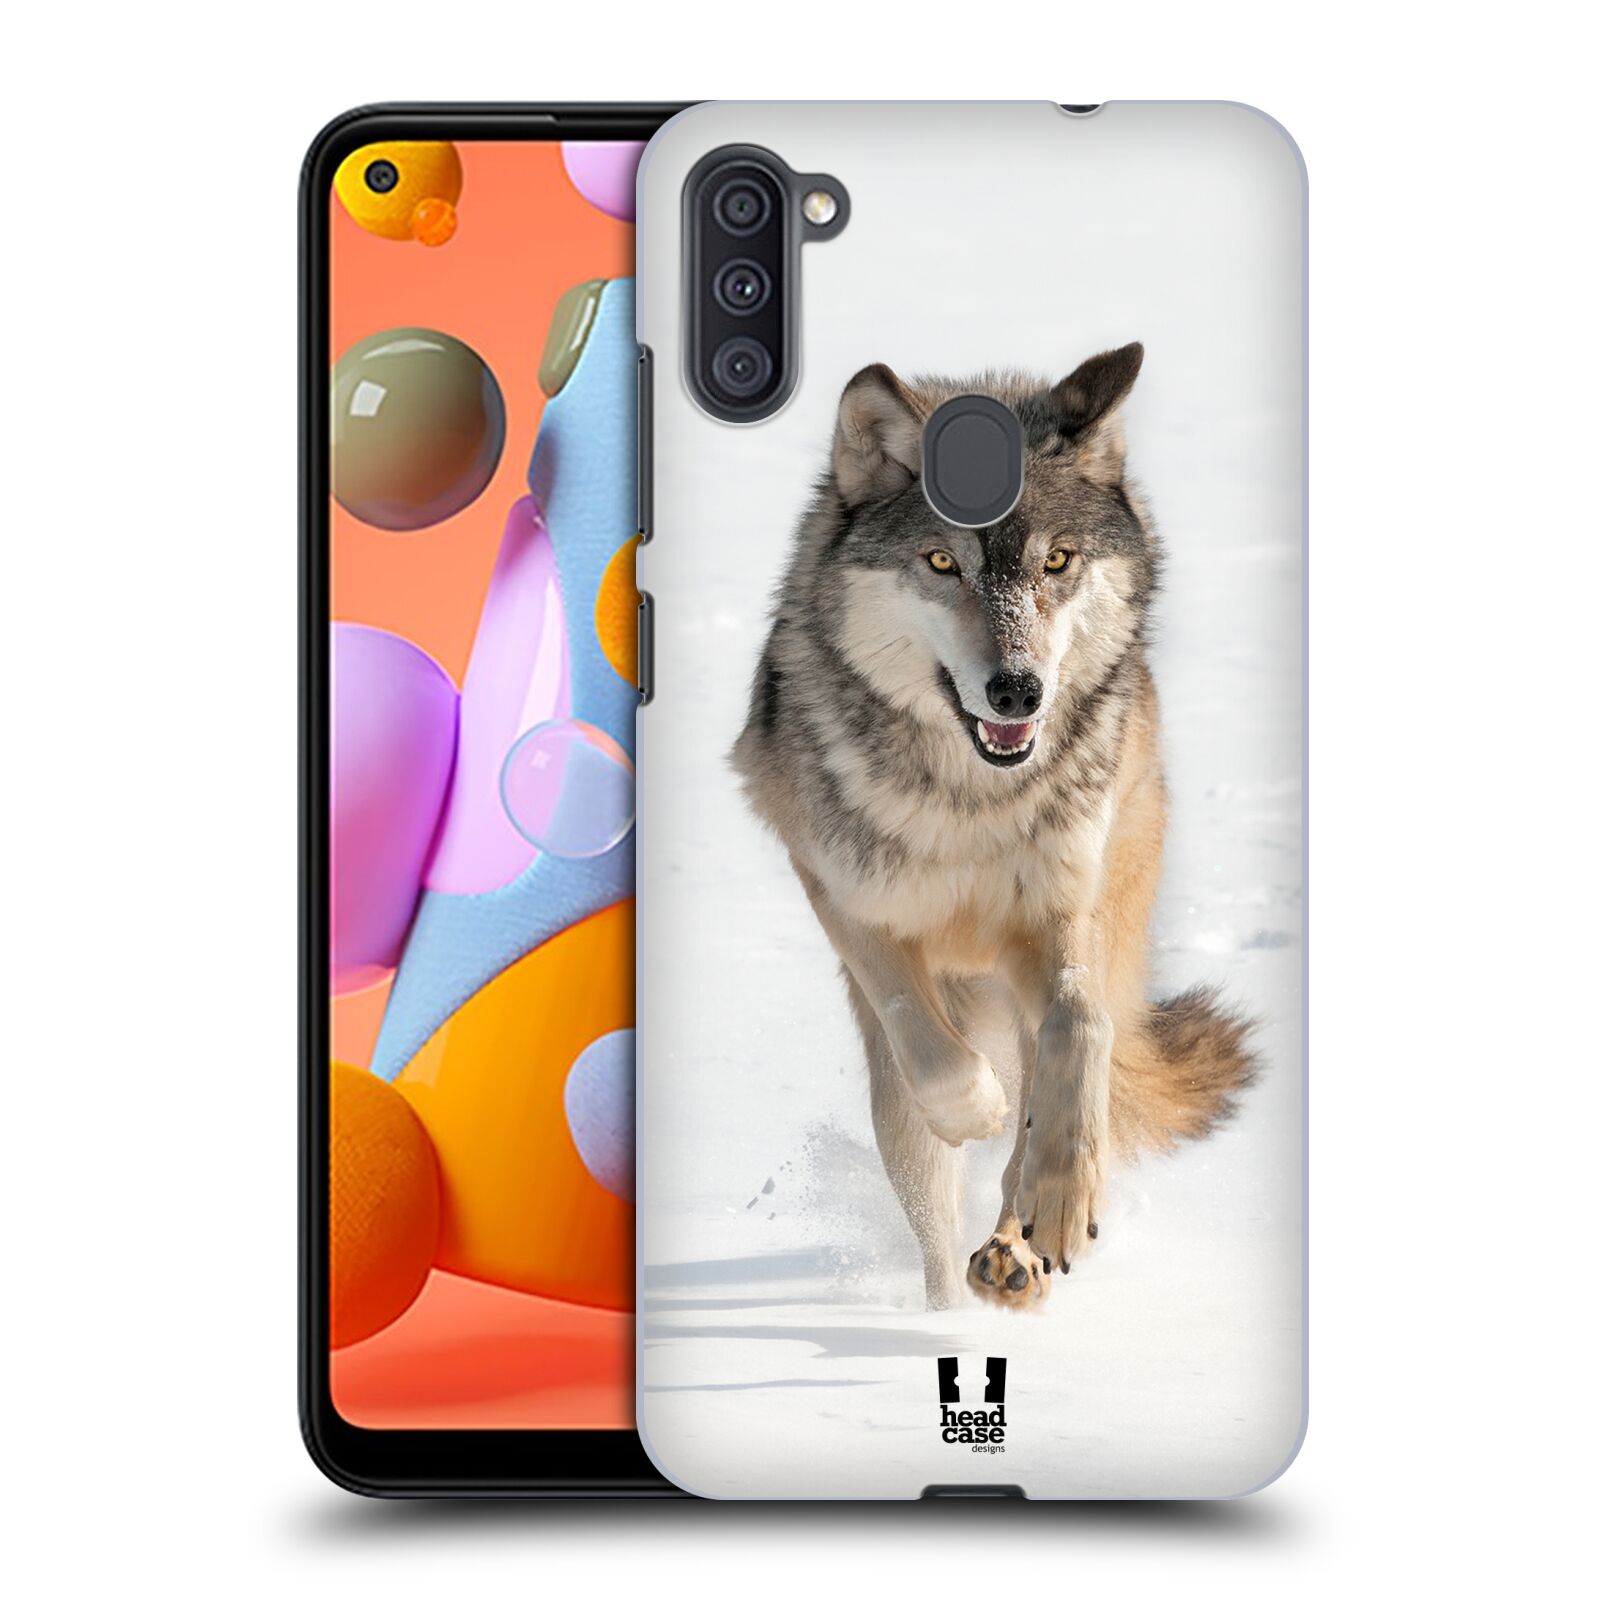 Zadní obal pro mobil Samsung Galaxy A11 - HEAD CASE - Svět zvířat divoký vlk